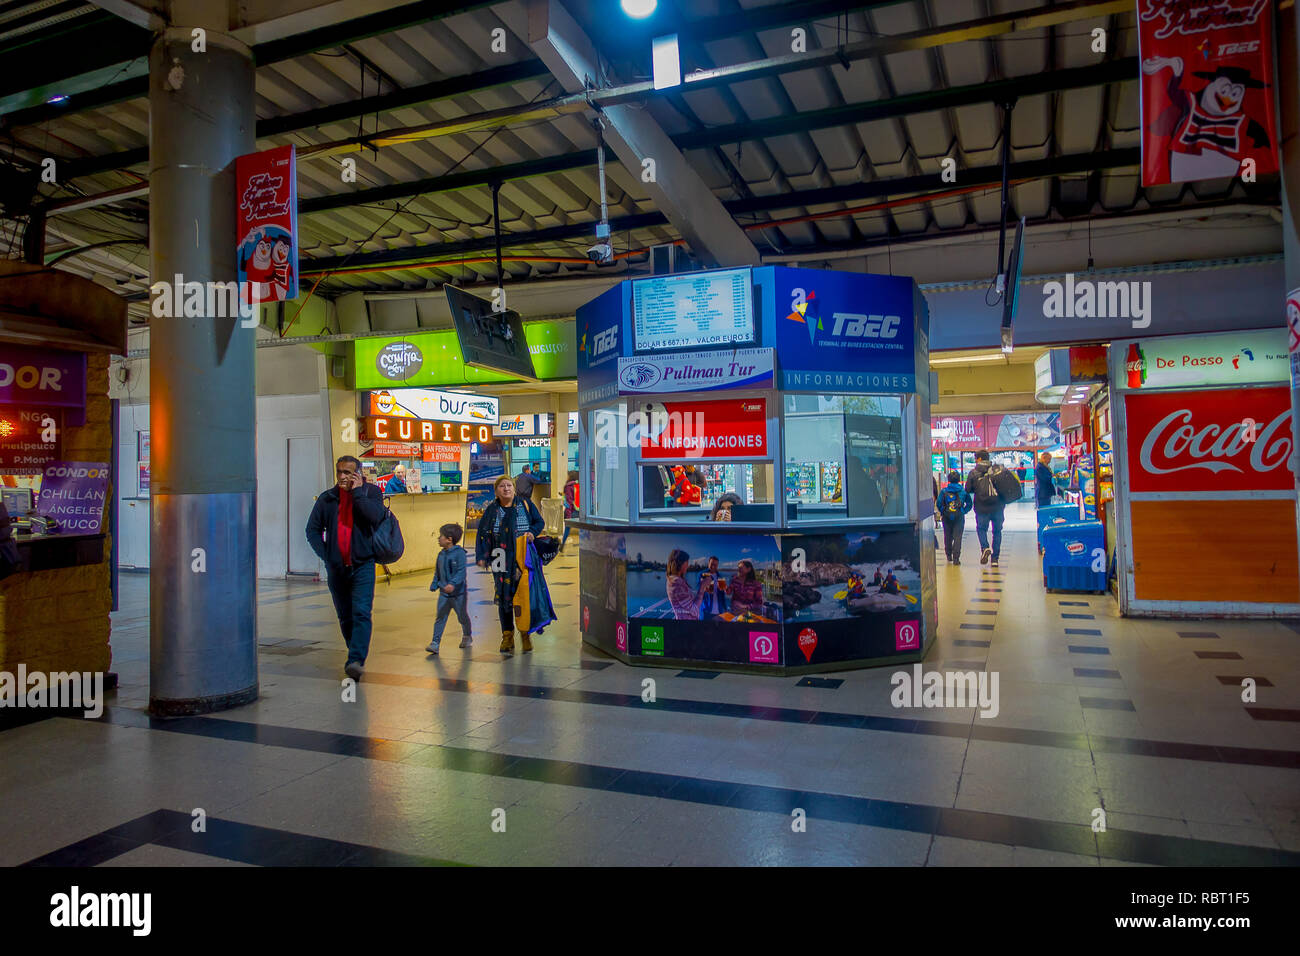 SANTIAGO, CHILI - 09 octobre, 2018 : personnes non identifiées à l'intérieur du terminal de bus. C'est la plus grande et la gare routière principale de la ville Banque D'Images